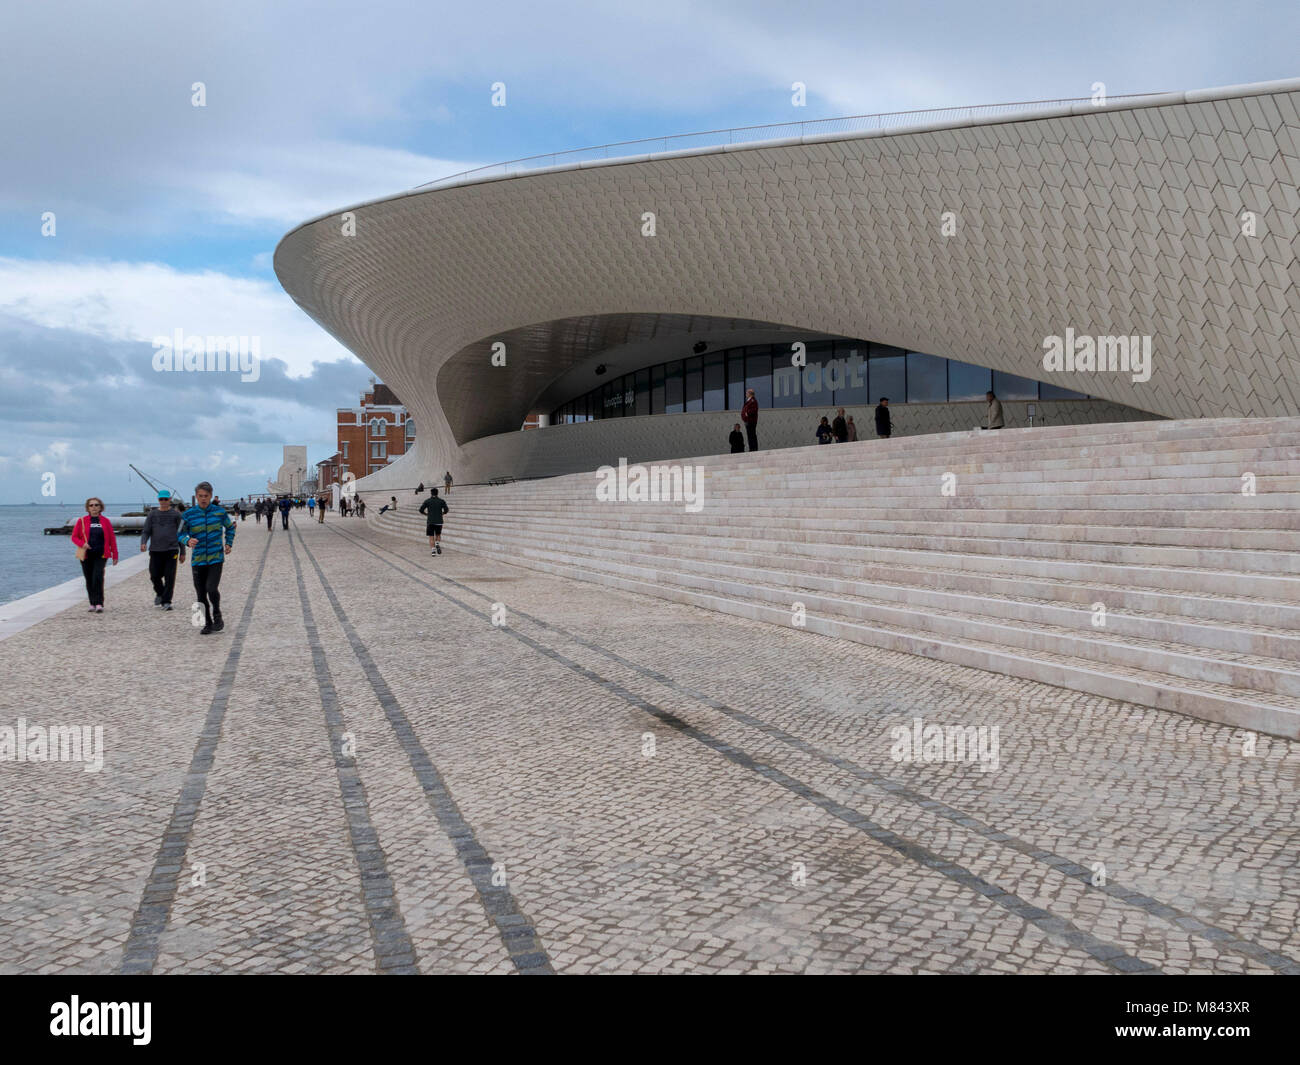 MAAT Museum of Art, l'architecture et de la technologie par l'architecte Amanda Levent, Lisbonne, Portugal, Europe Banque D'Images